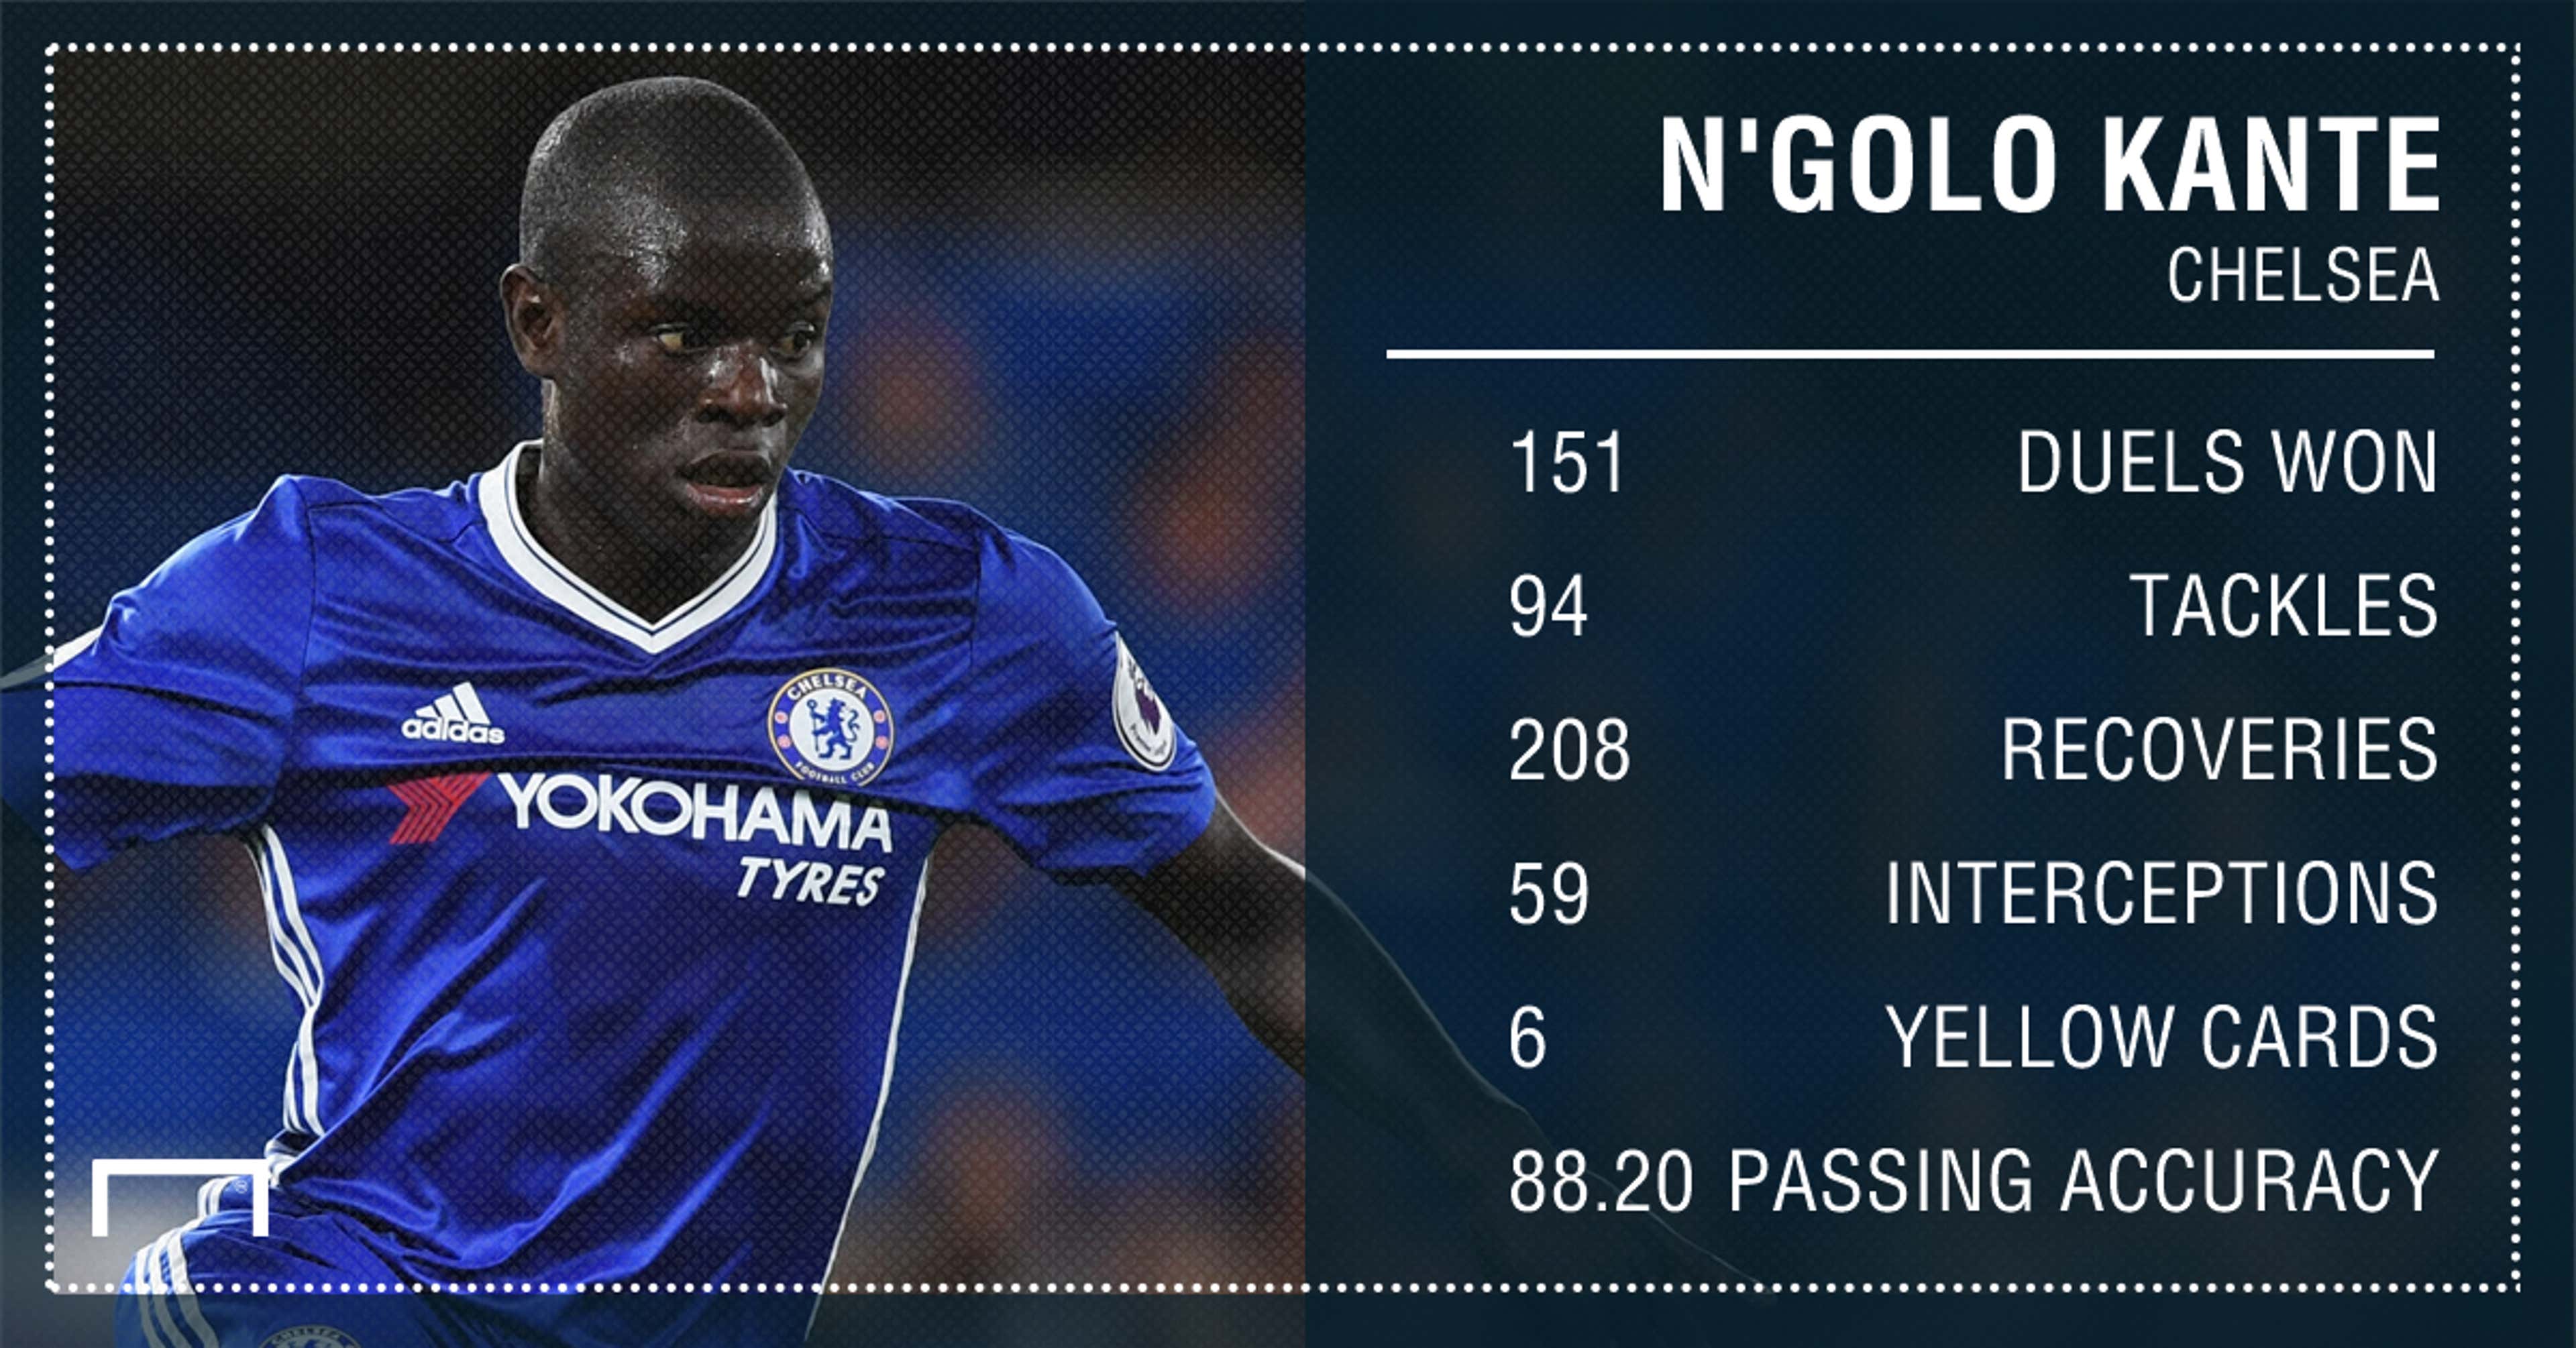 N'Golo Kante Chelsea stats